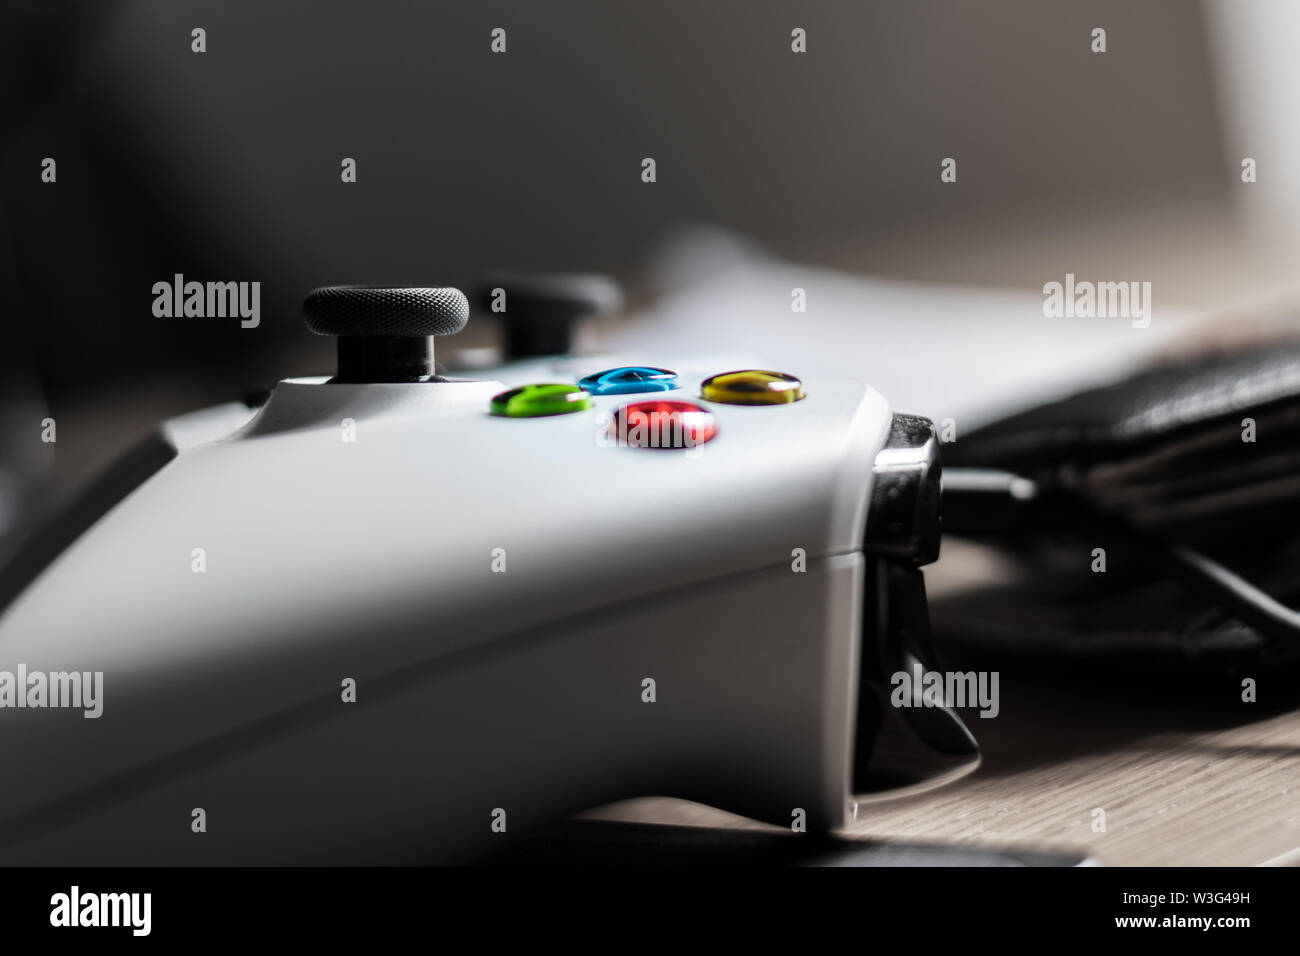 Eine Nahaufnahme von einem weißen xbox controller In einem hell erleuchteten Raum konzentriert sich auf die Tasten Stockfoto